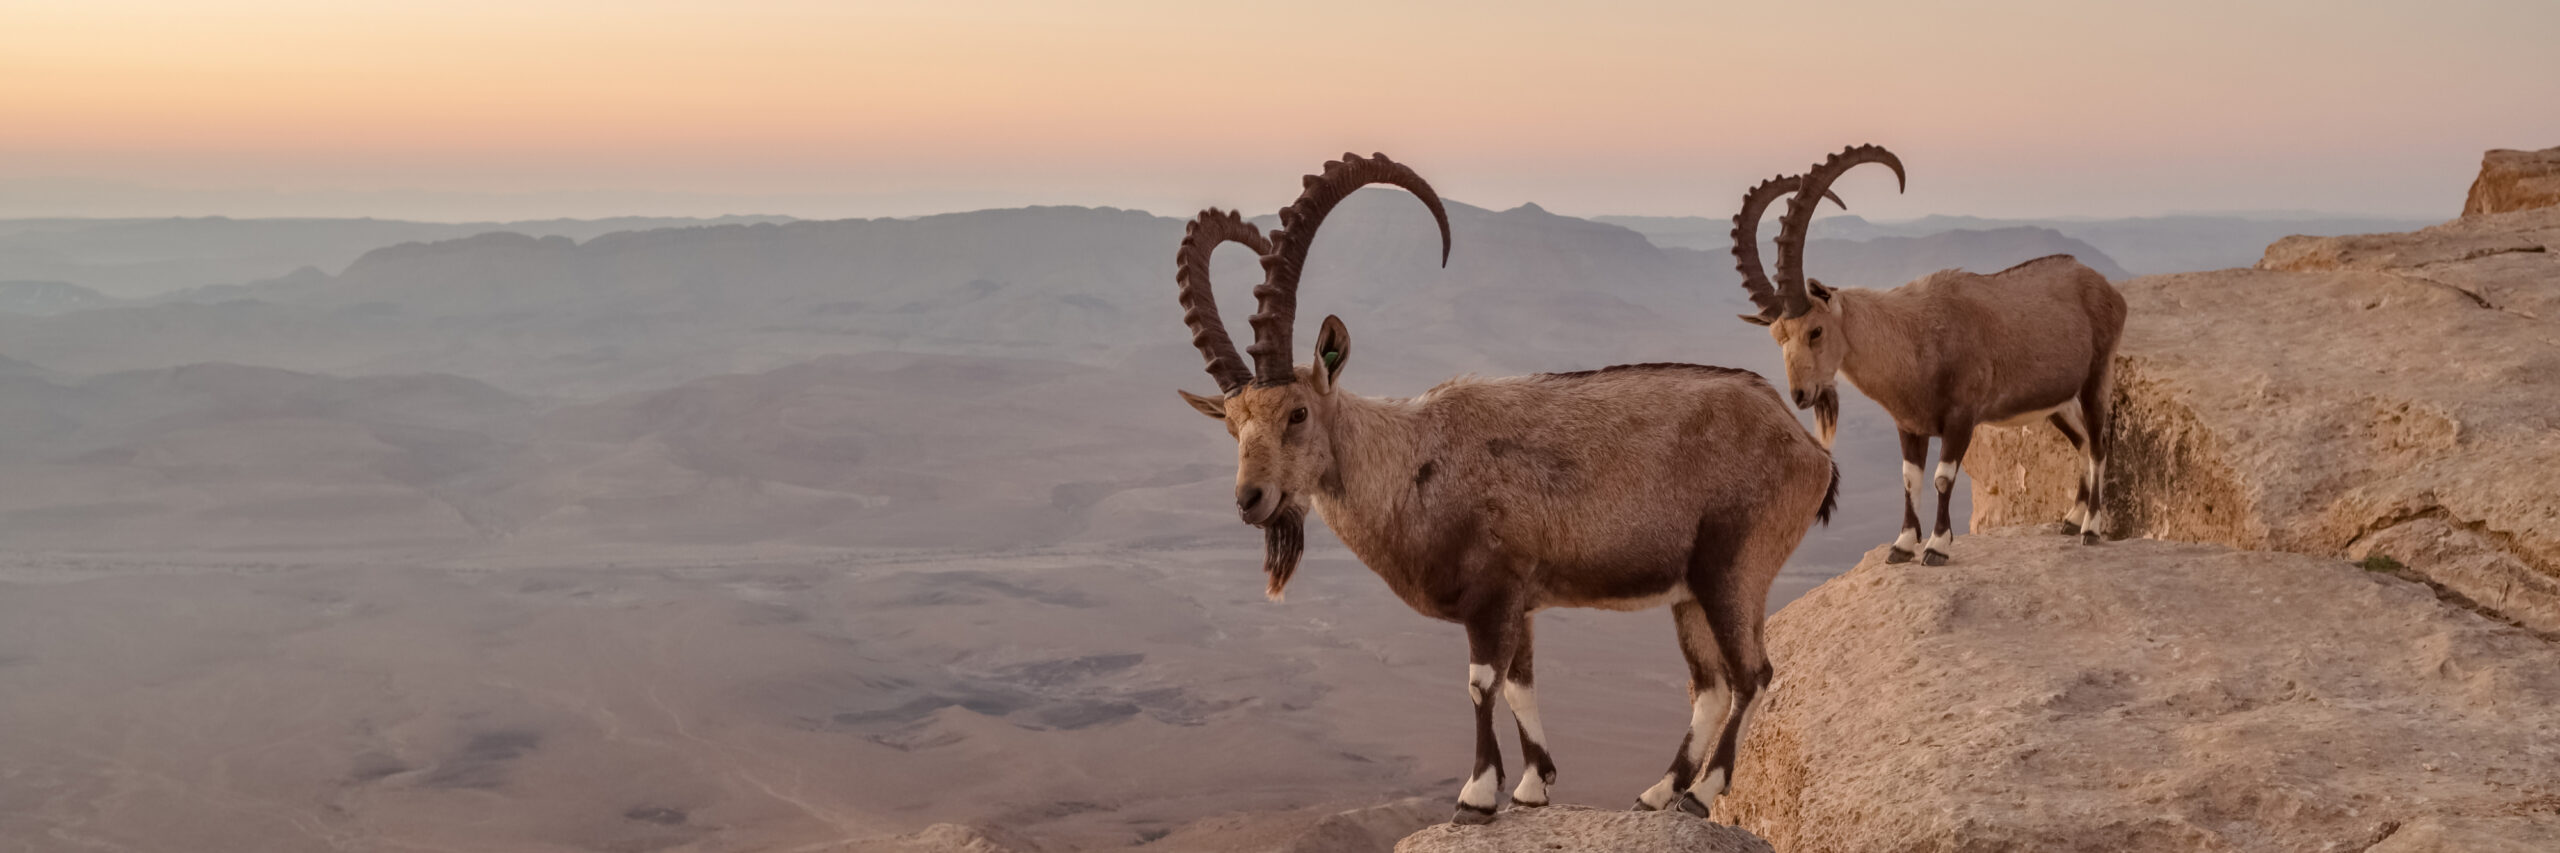 persian-desert-ibex